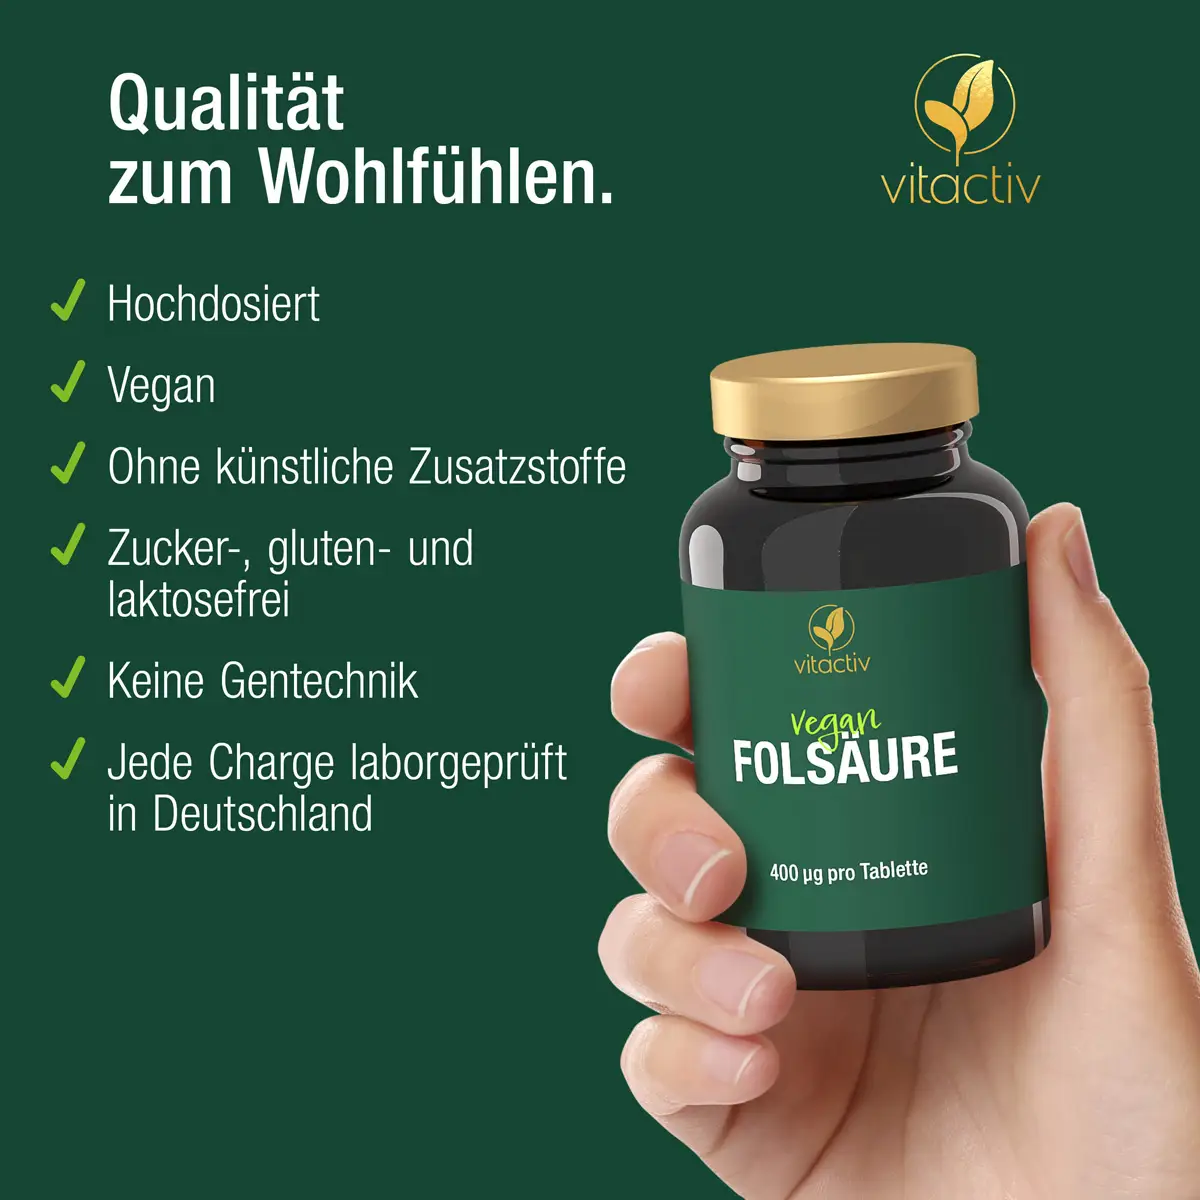 Qualität zum Wohlfühlen: Vitactiv FOLSÄURE ist hochdosiert, vegan und frei von künstlichen Zusätzen. Jede Charge des Produkts wird von einem unabhängigen LAbor in Deutschland laborgeprüft.